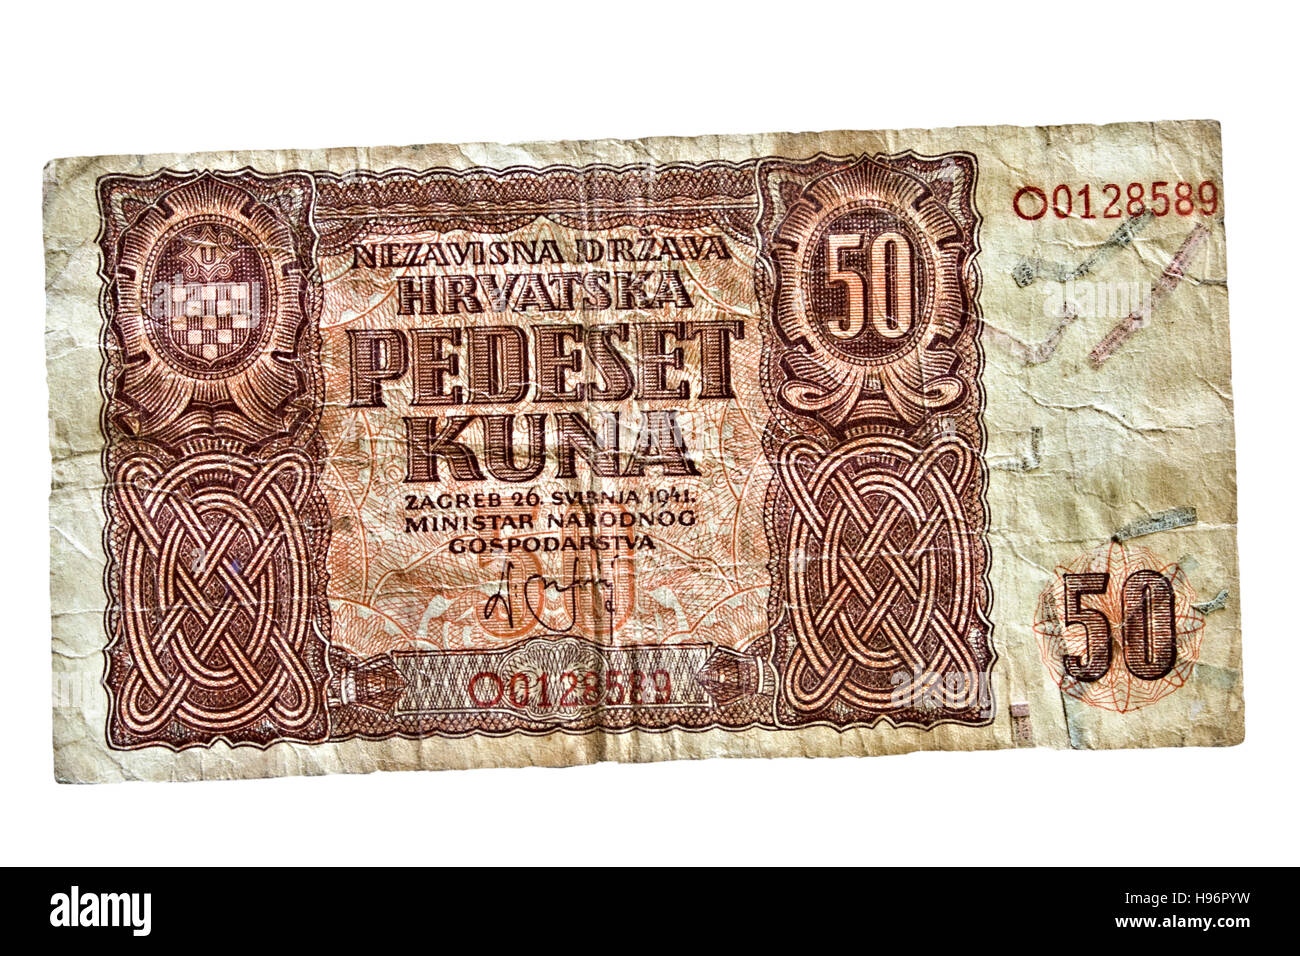 Billet de 50 kuna croate de l'année 1941 Banque D'Images